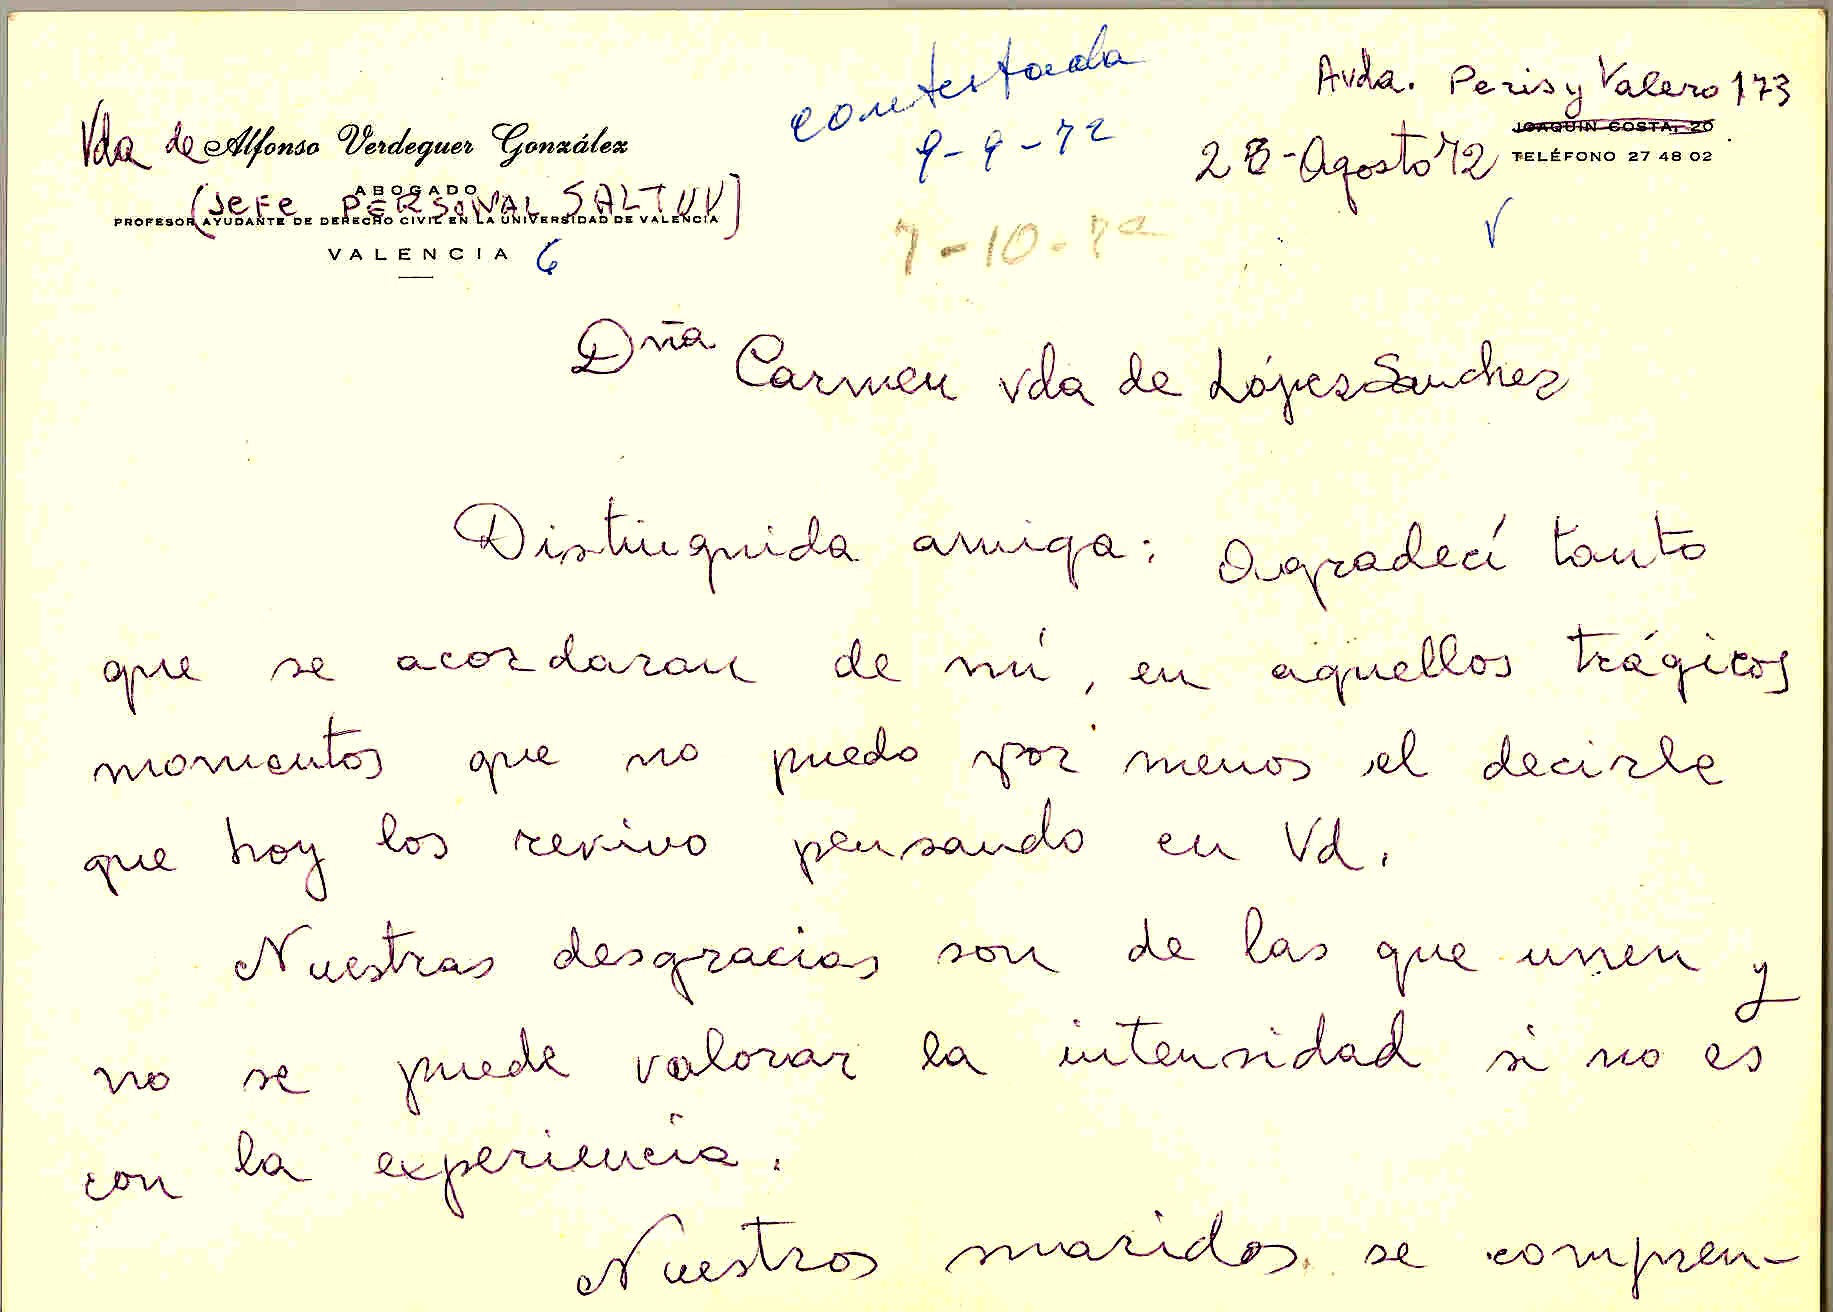 Carta de Rosario Campos (viuda de Alfonso Verdeguer) expresando su pésame por la muerte de Juan López